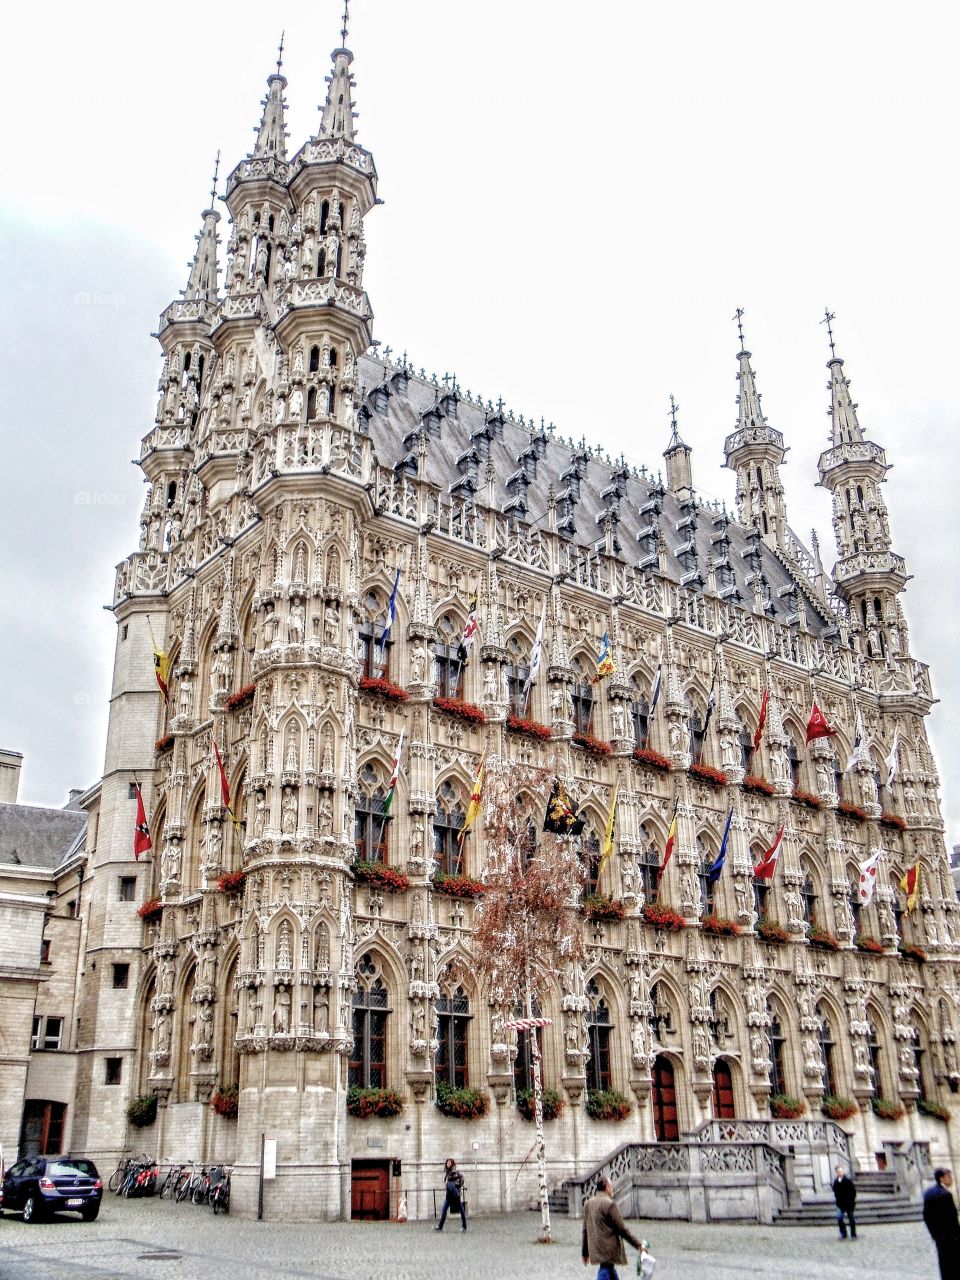 Historical Leuven Town Hall - Leuven, BELGIUM